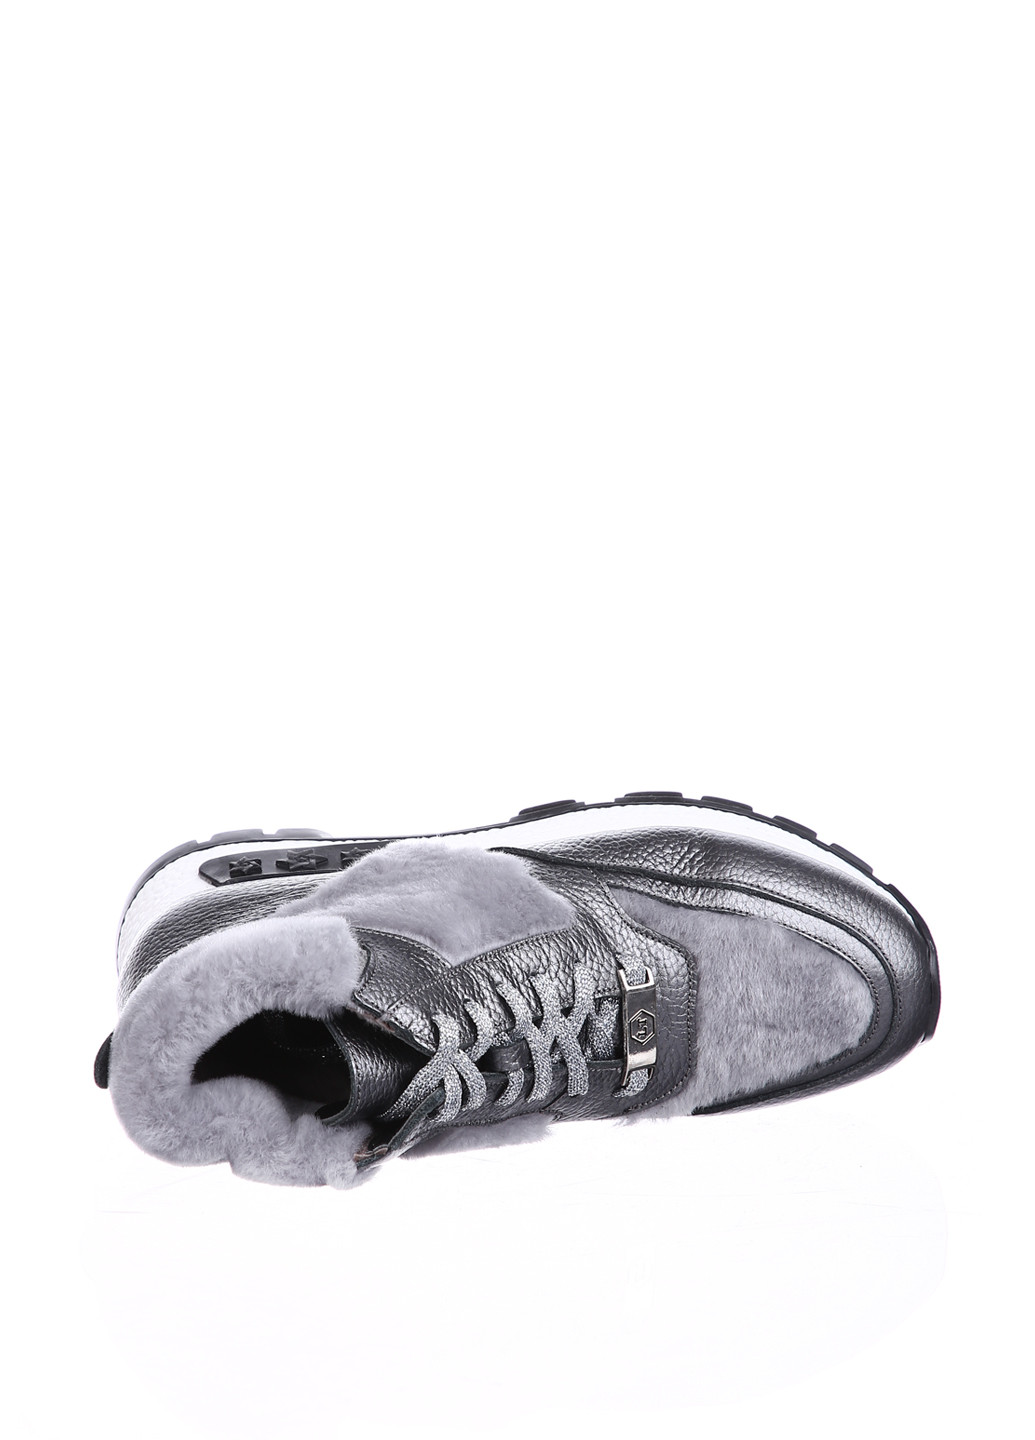 Осенние ботинки сникерсы Lottini с мехом